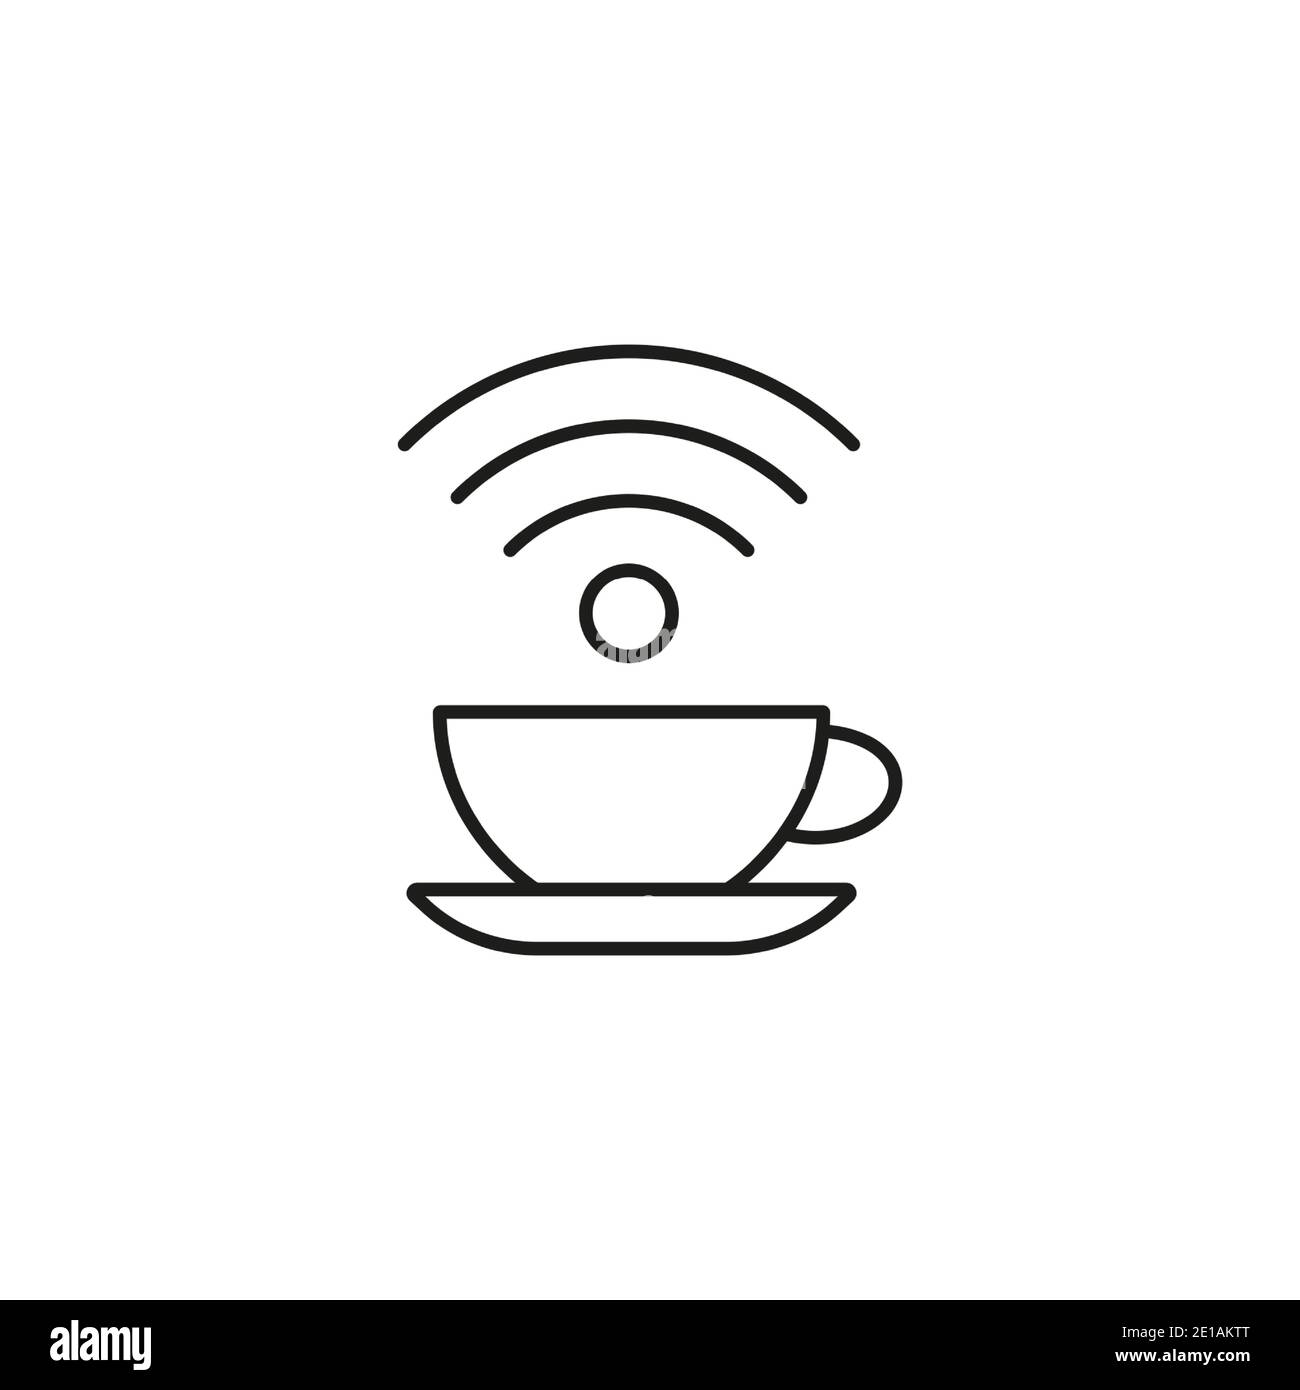 icône cafe wifi élément de l'icône du restaurant pour le concept mobile et les applications web. L'icône thin Line Cafe wifi peut être utilisée pour le Web et les mobiles. Icône Premium sur wh Illustration de Vecteur